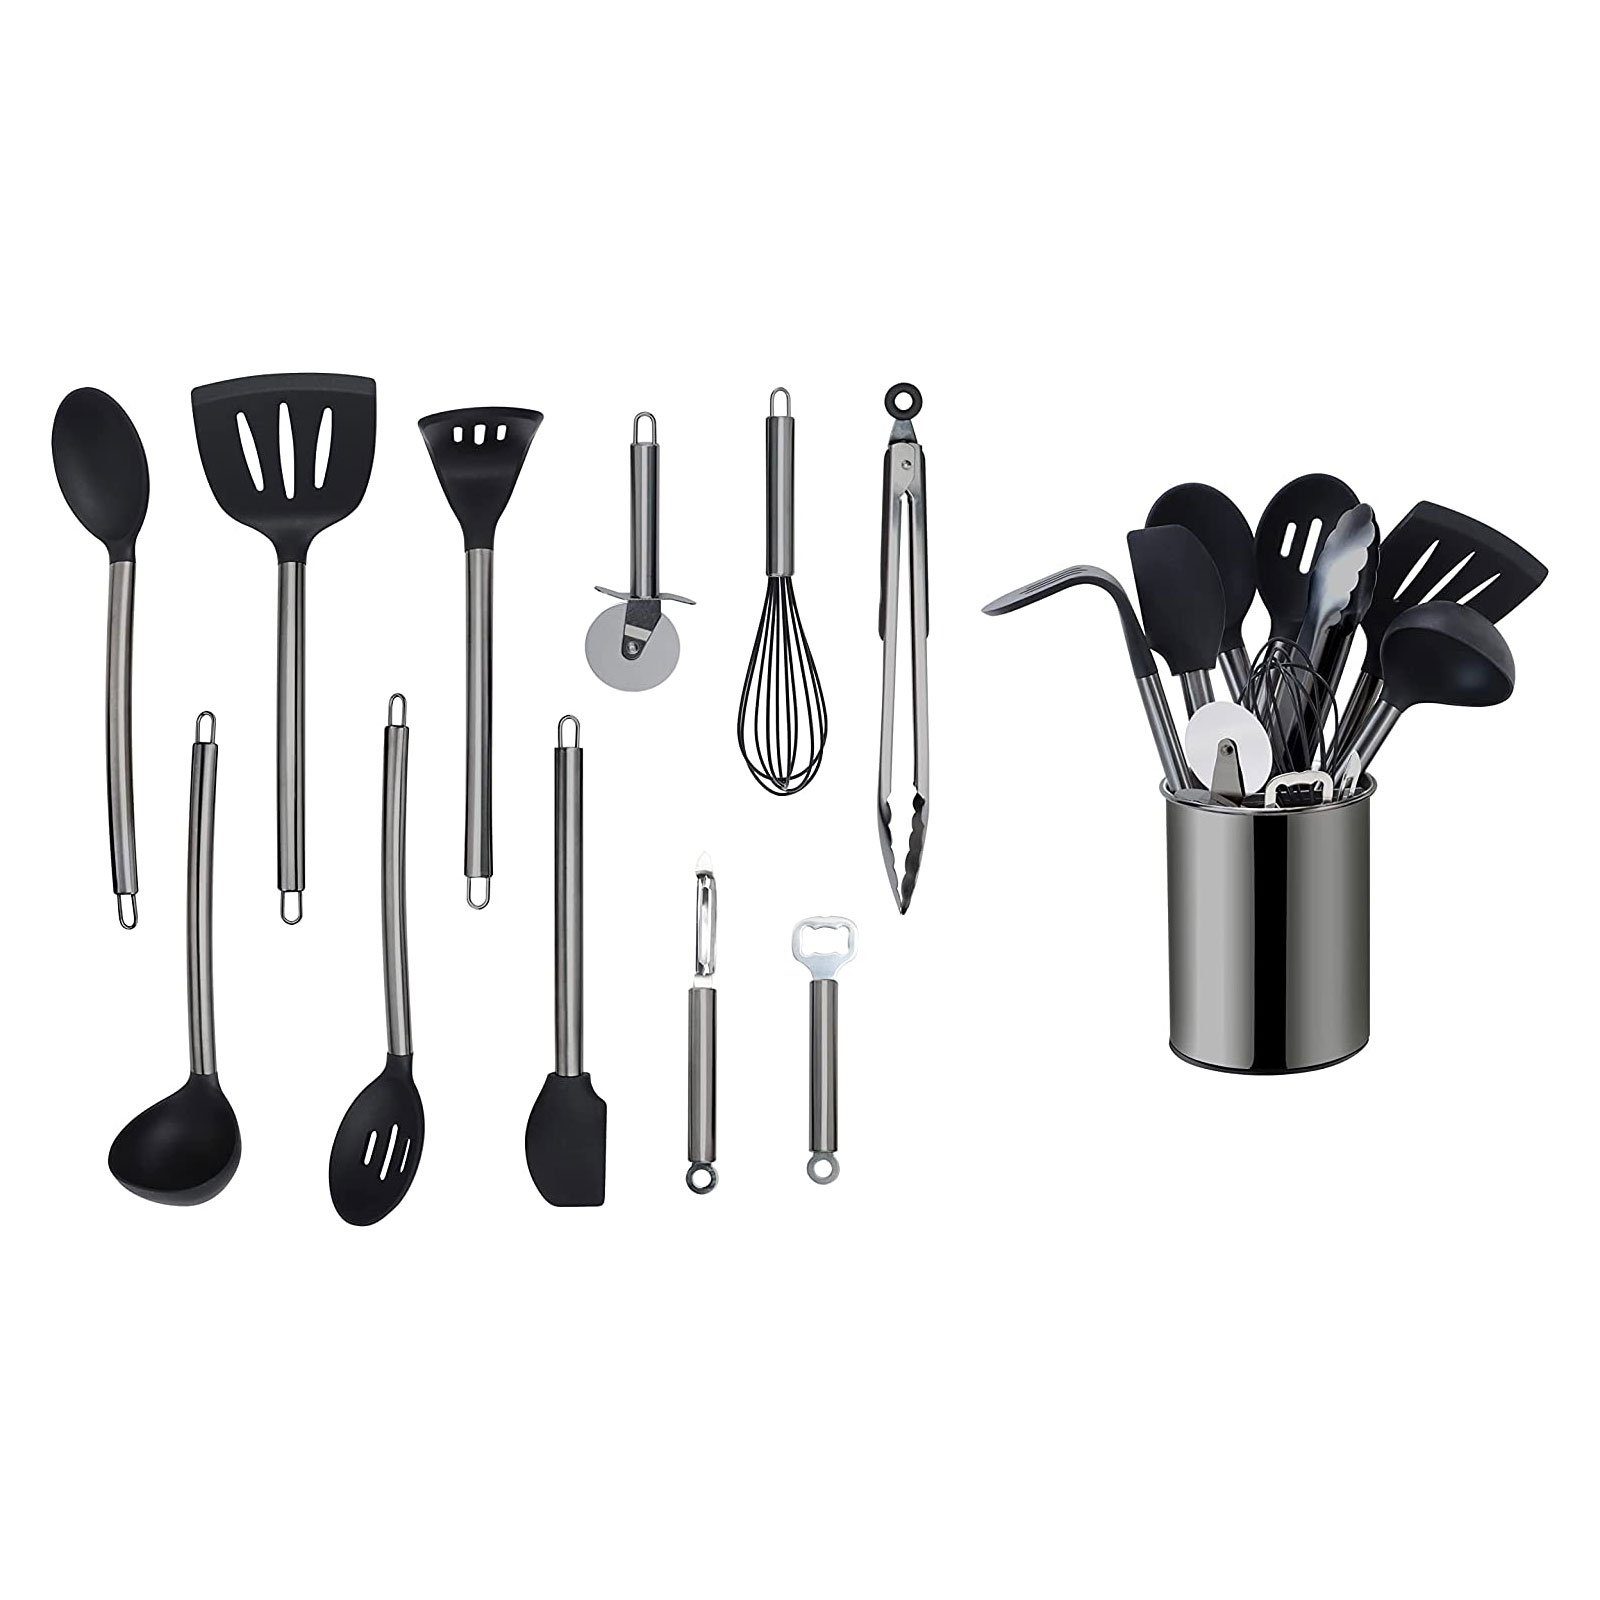 Edelstahlgriff, mit Black mit Schwarz ECHTWERK Küchenorganizer-Set, Kochset Kochbesteck Utensilienhalter,